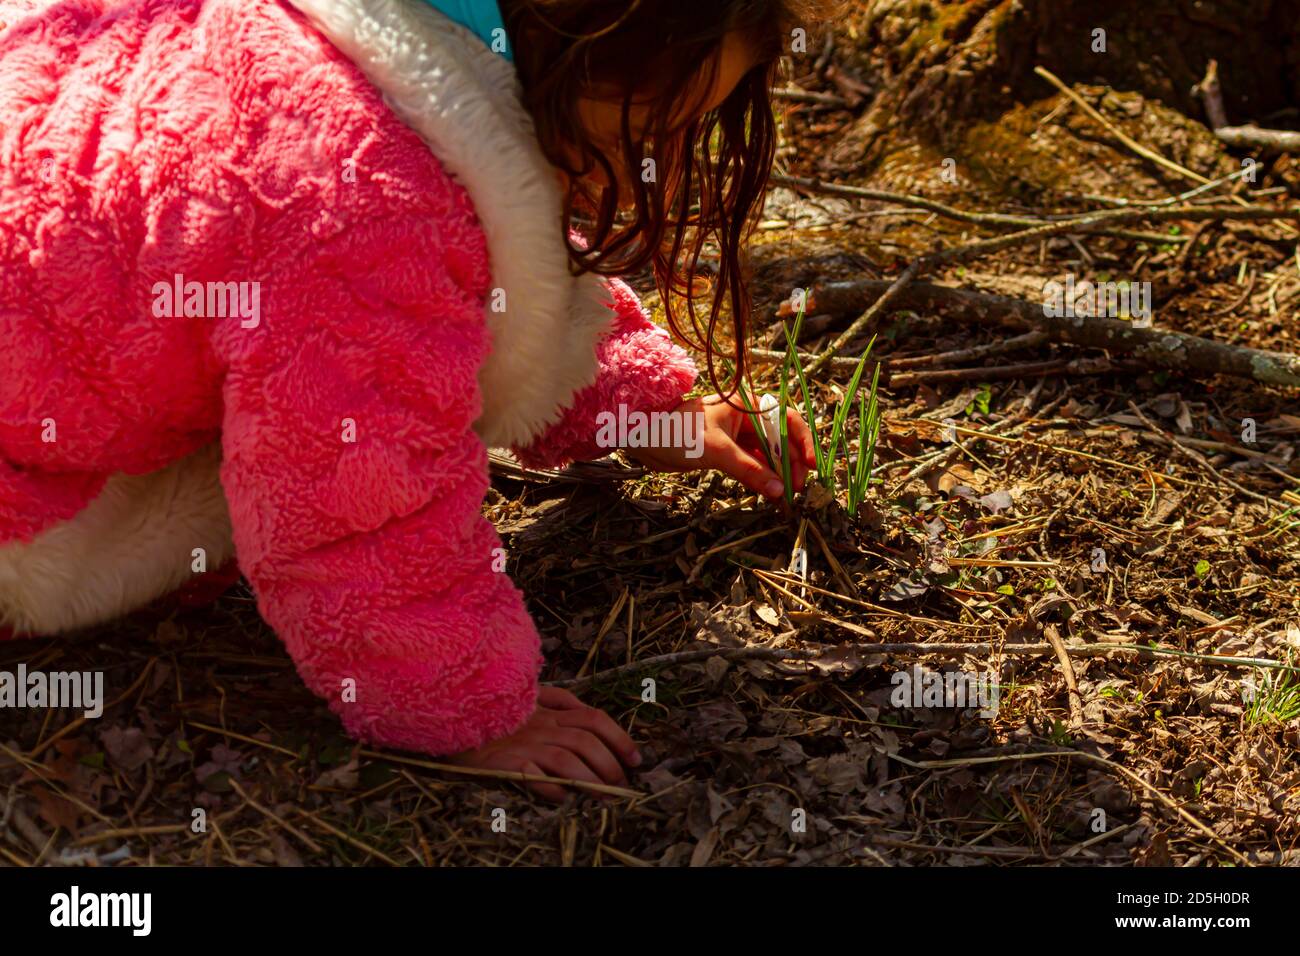 Una bambina carina che indossa un soffice cappotto invernale rosa si inginocchia a terra in una foresta per osservare una pianta bulbo fiorita. Il bambino curioso è gentilmente t Foto Stock